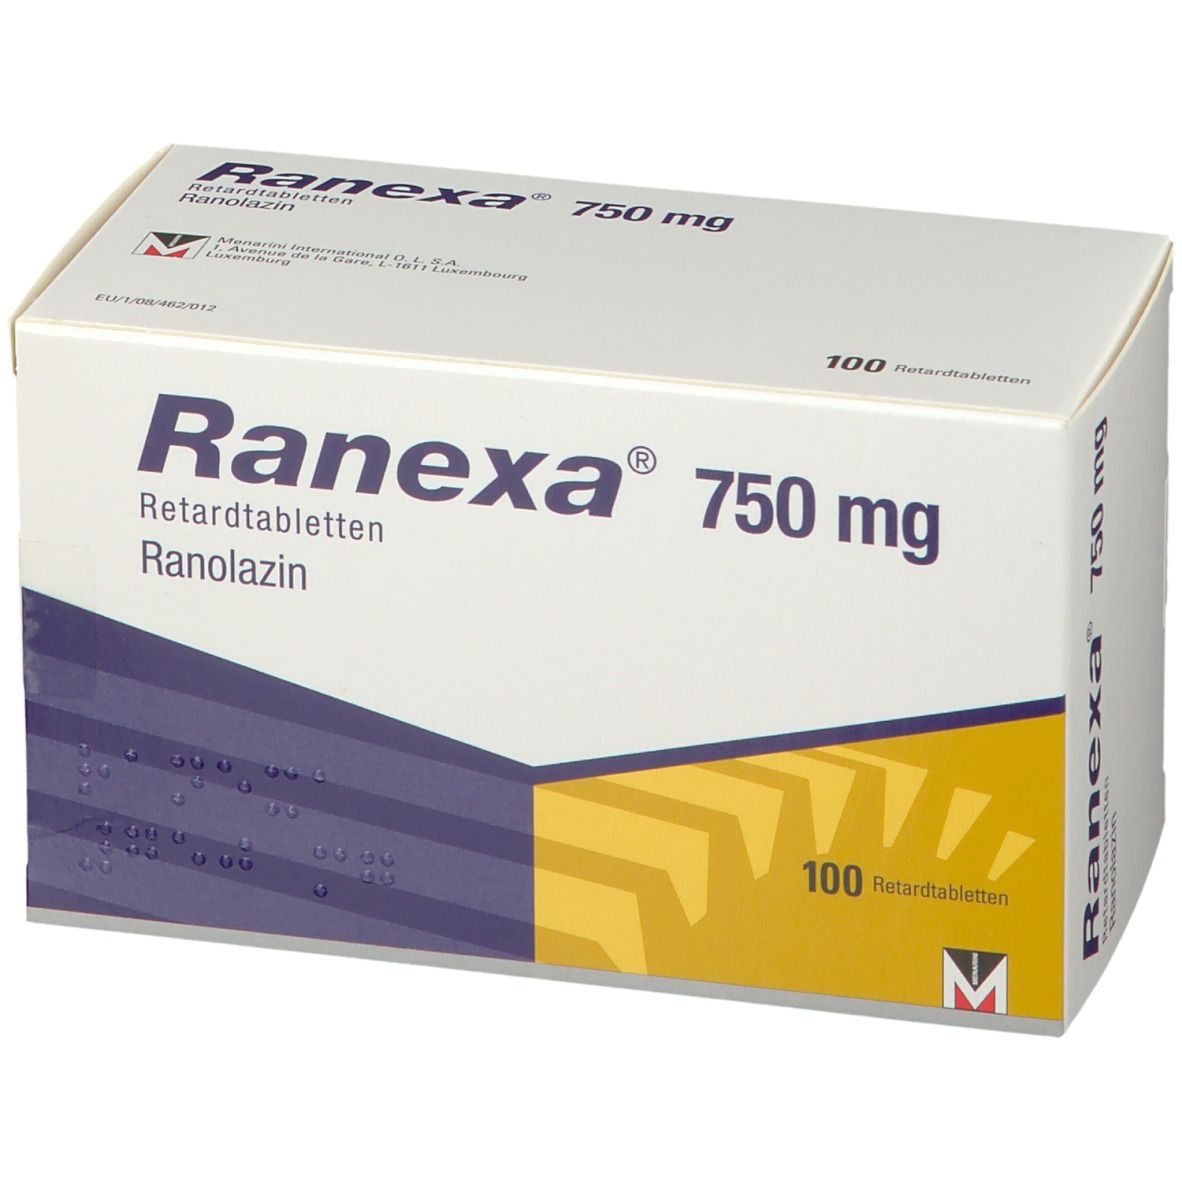 Ranexa® 750 mg